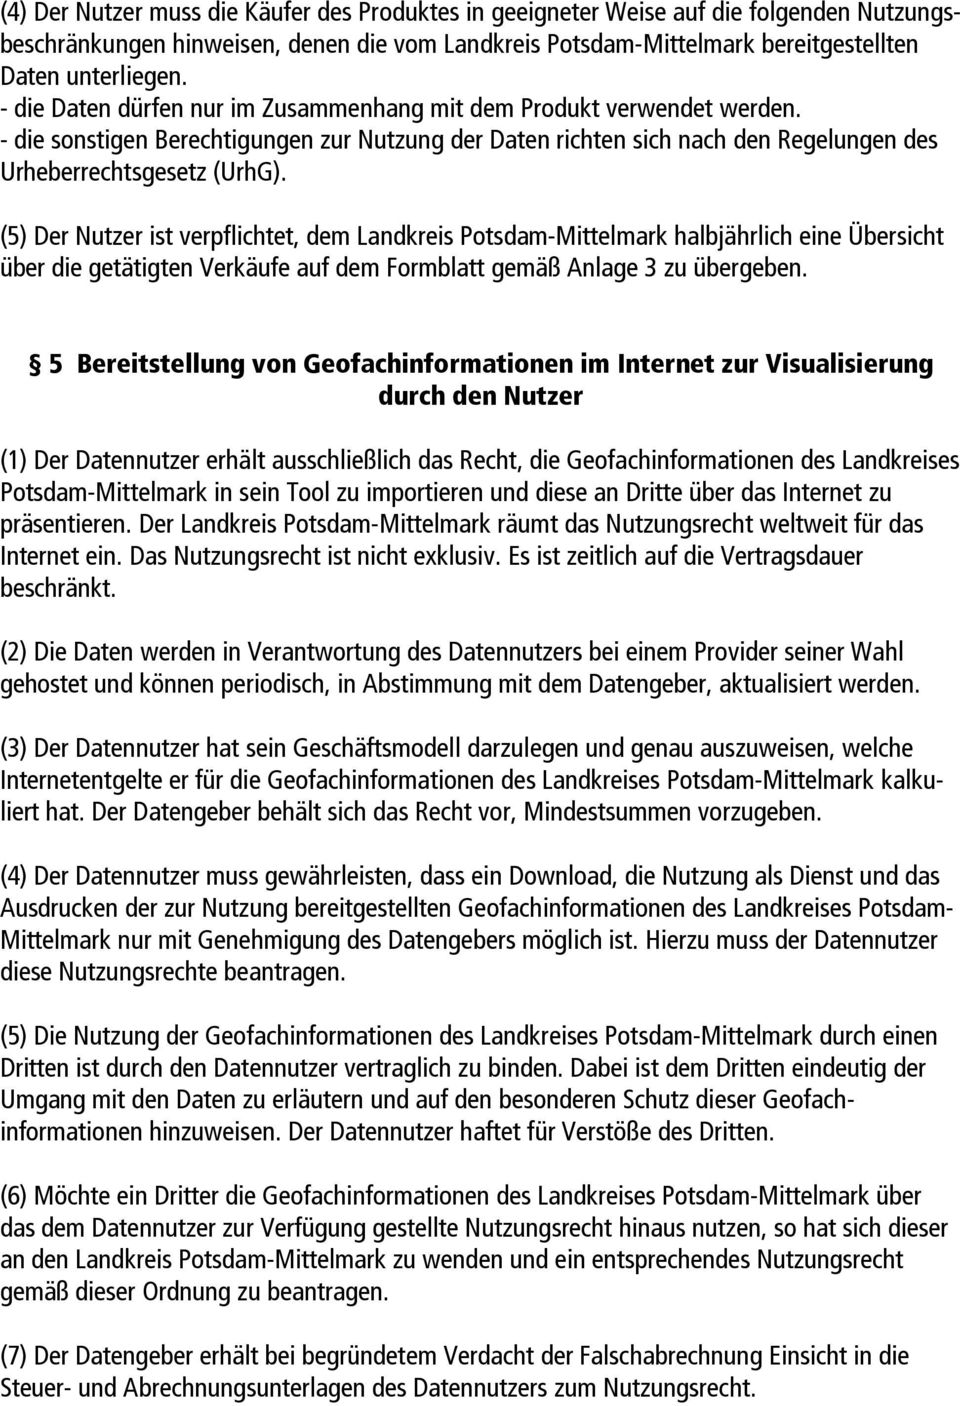 (5) Der Nutzer ist verpflichtet, dem Landkreis Potsdam-Mittelmark halbjährlich eine Übersicht über die getätigten Verkäufe auf dem Formblatt gemäß Anlage 3 zu übergeben.